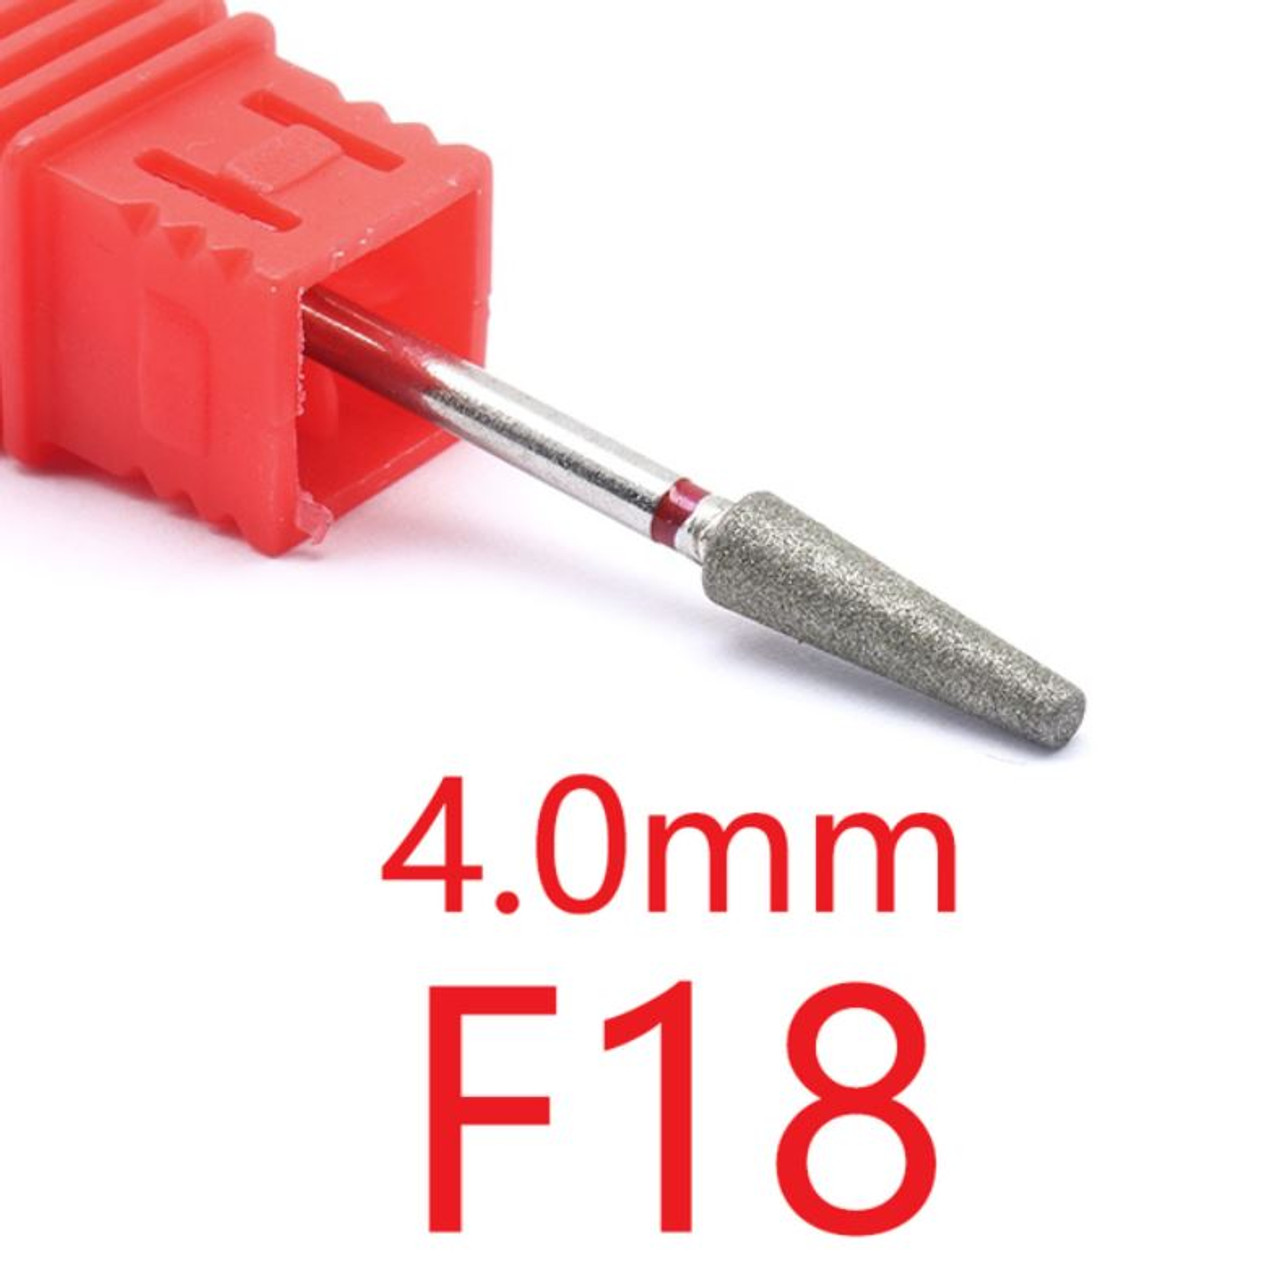 NDi beauty Diamond Drill Bit - 3/32 shank (FINE) - F18